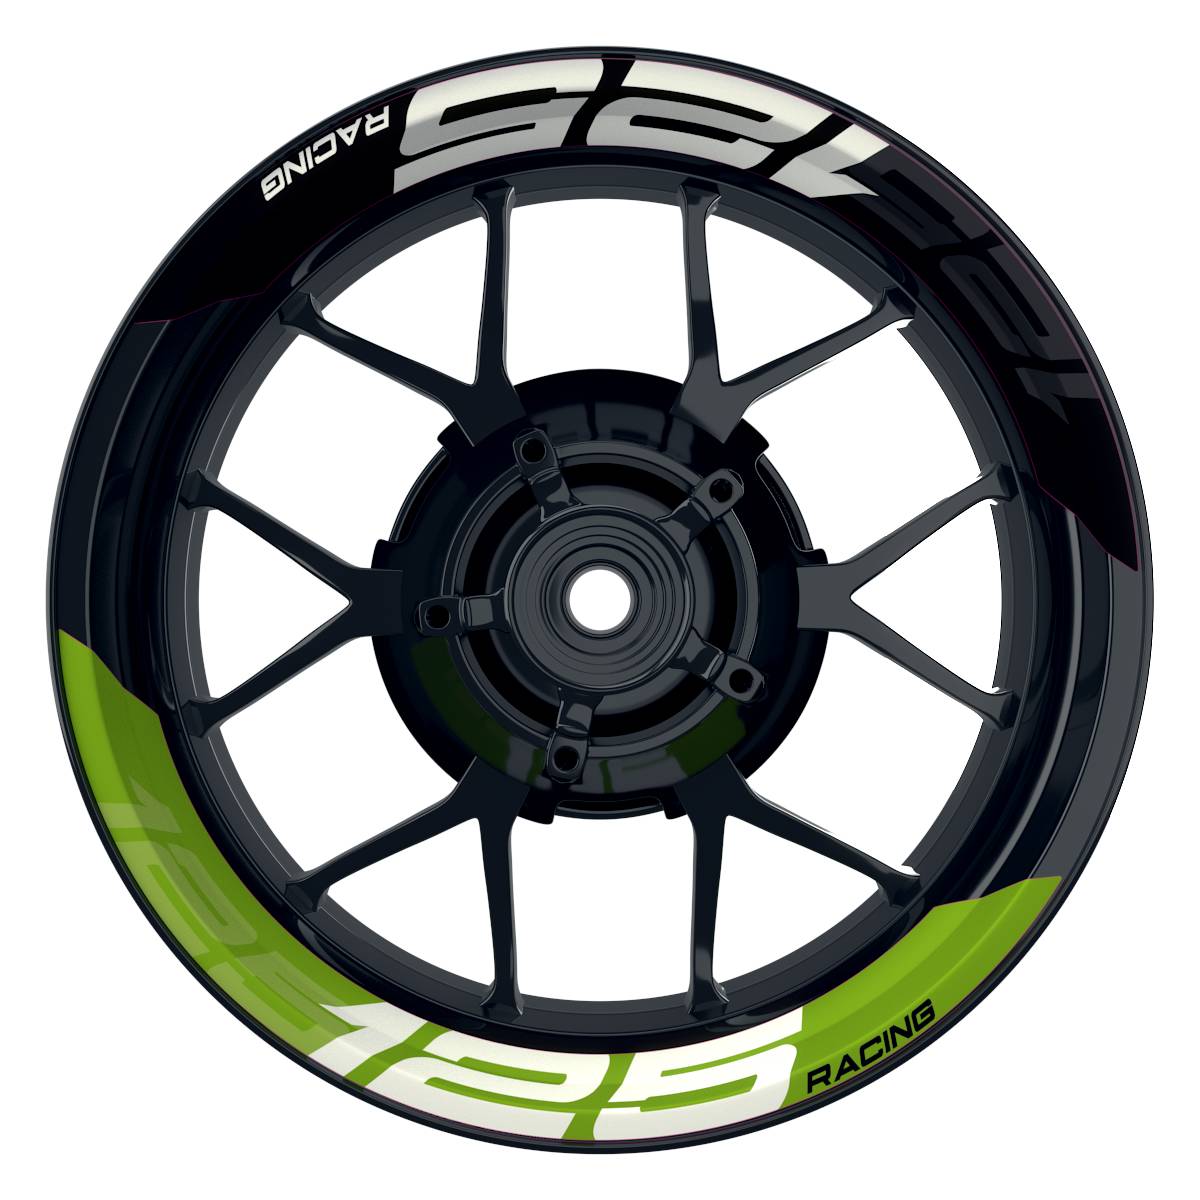 Wheelsticker Felgenaufkleber KTM Racing 125 halb halb V2 schwarz gruen Frontansicht